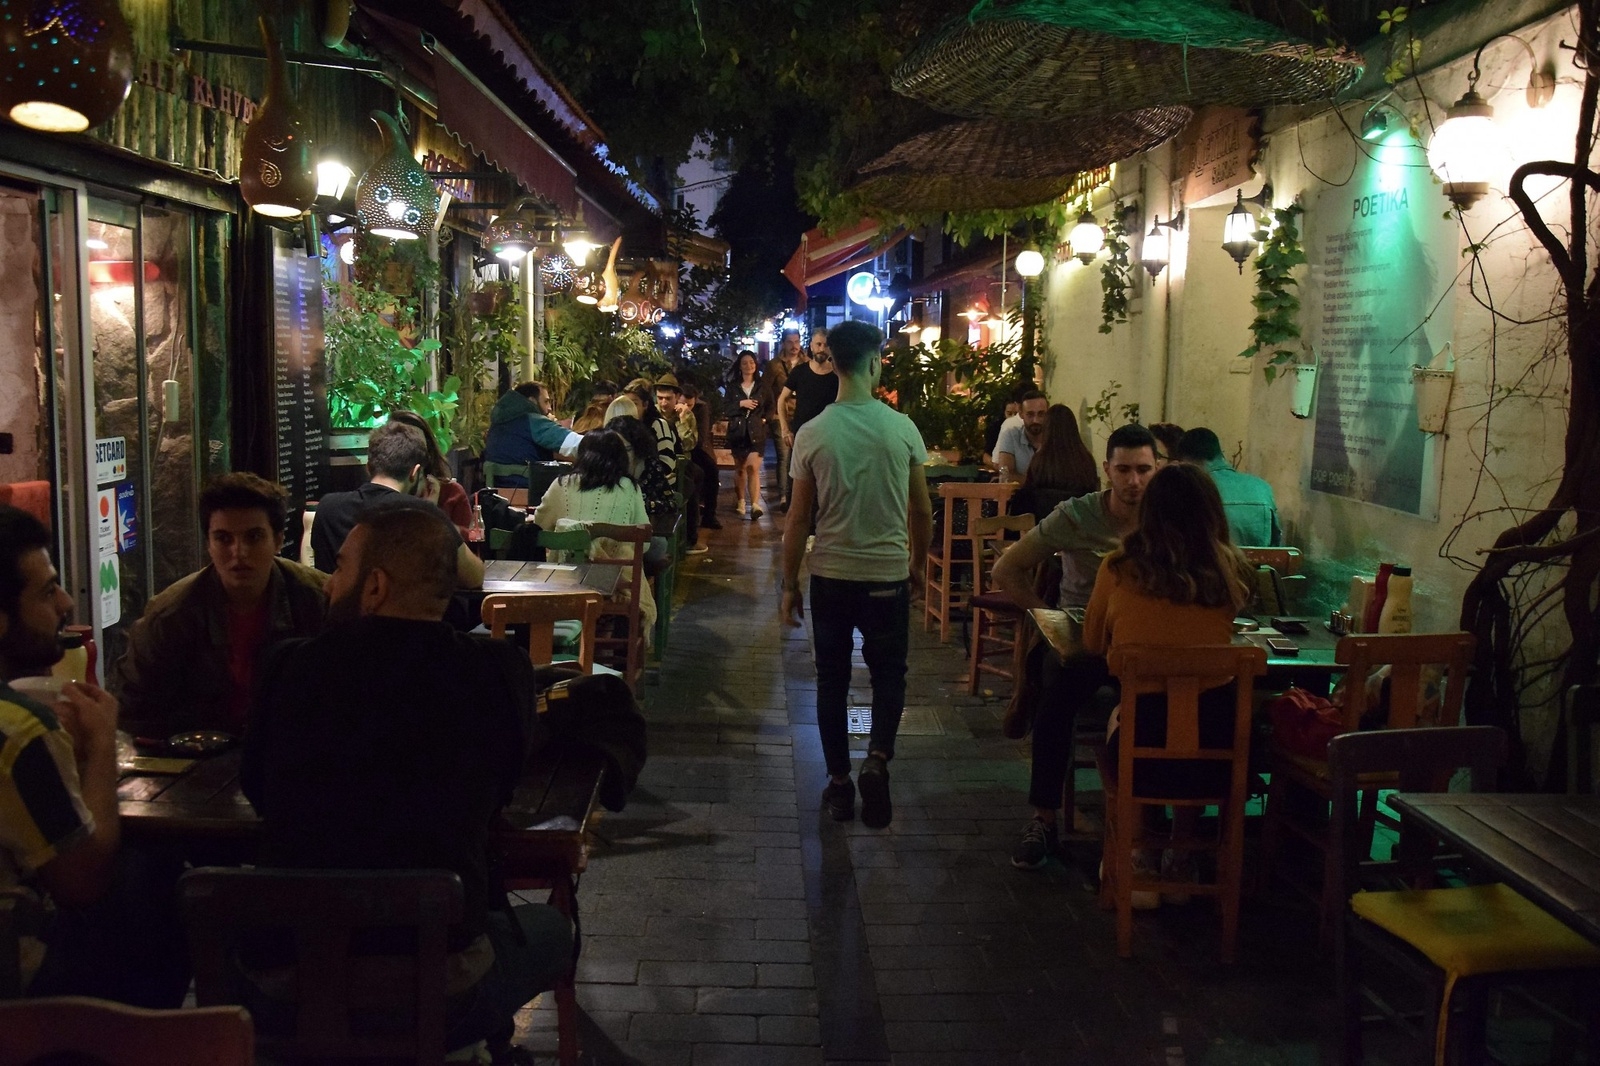 Ska man bo i Izmir är stadsdelen Alsancak den mysigaste och livligaste med mängder av restauranger, affärer, kaféer och pubar.